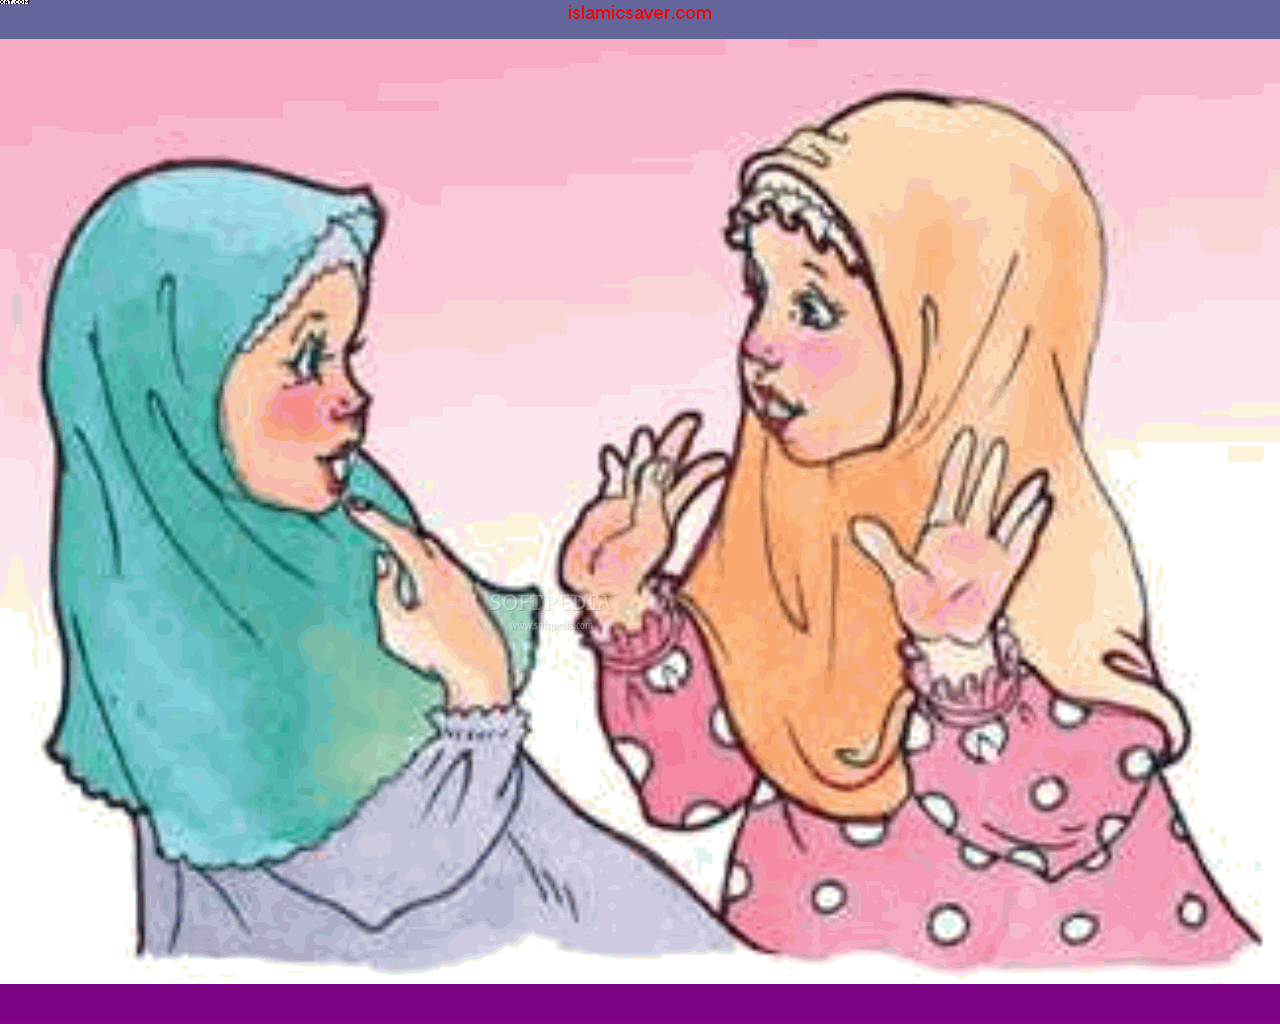 Gambar Kartun Anak Muslim Perempuan Top Gambar